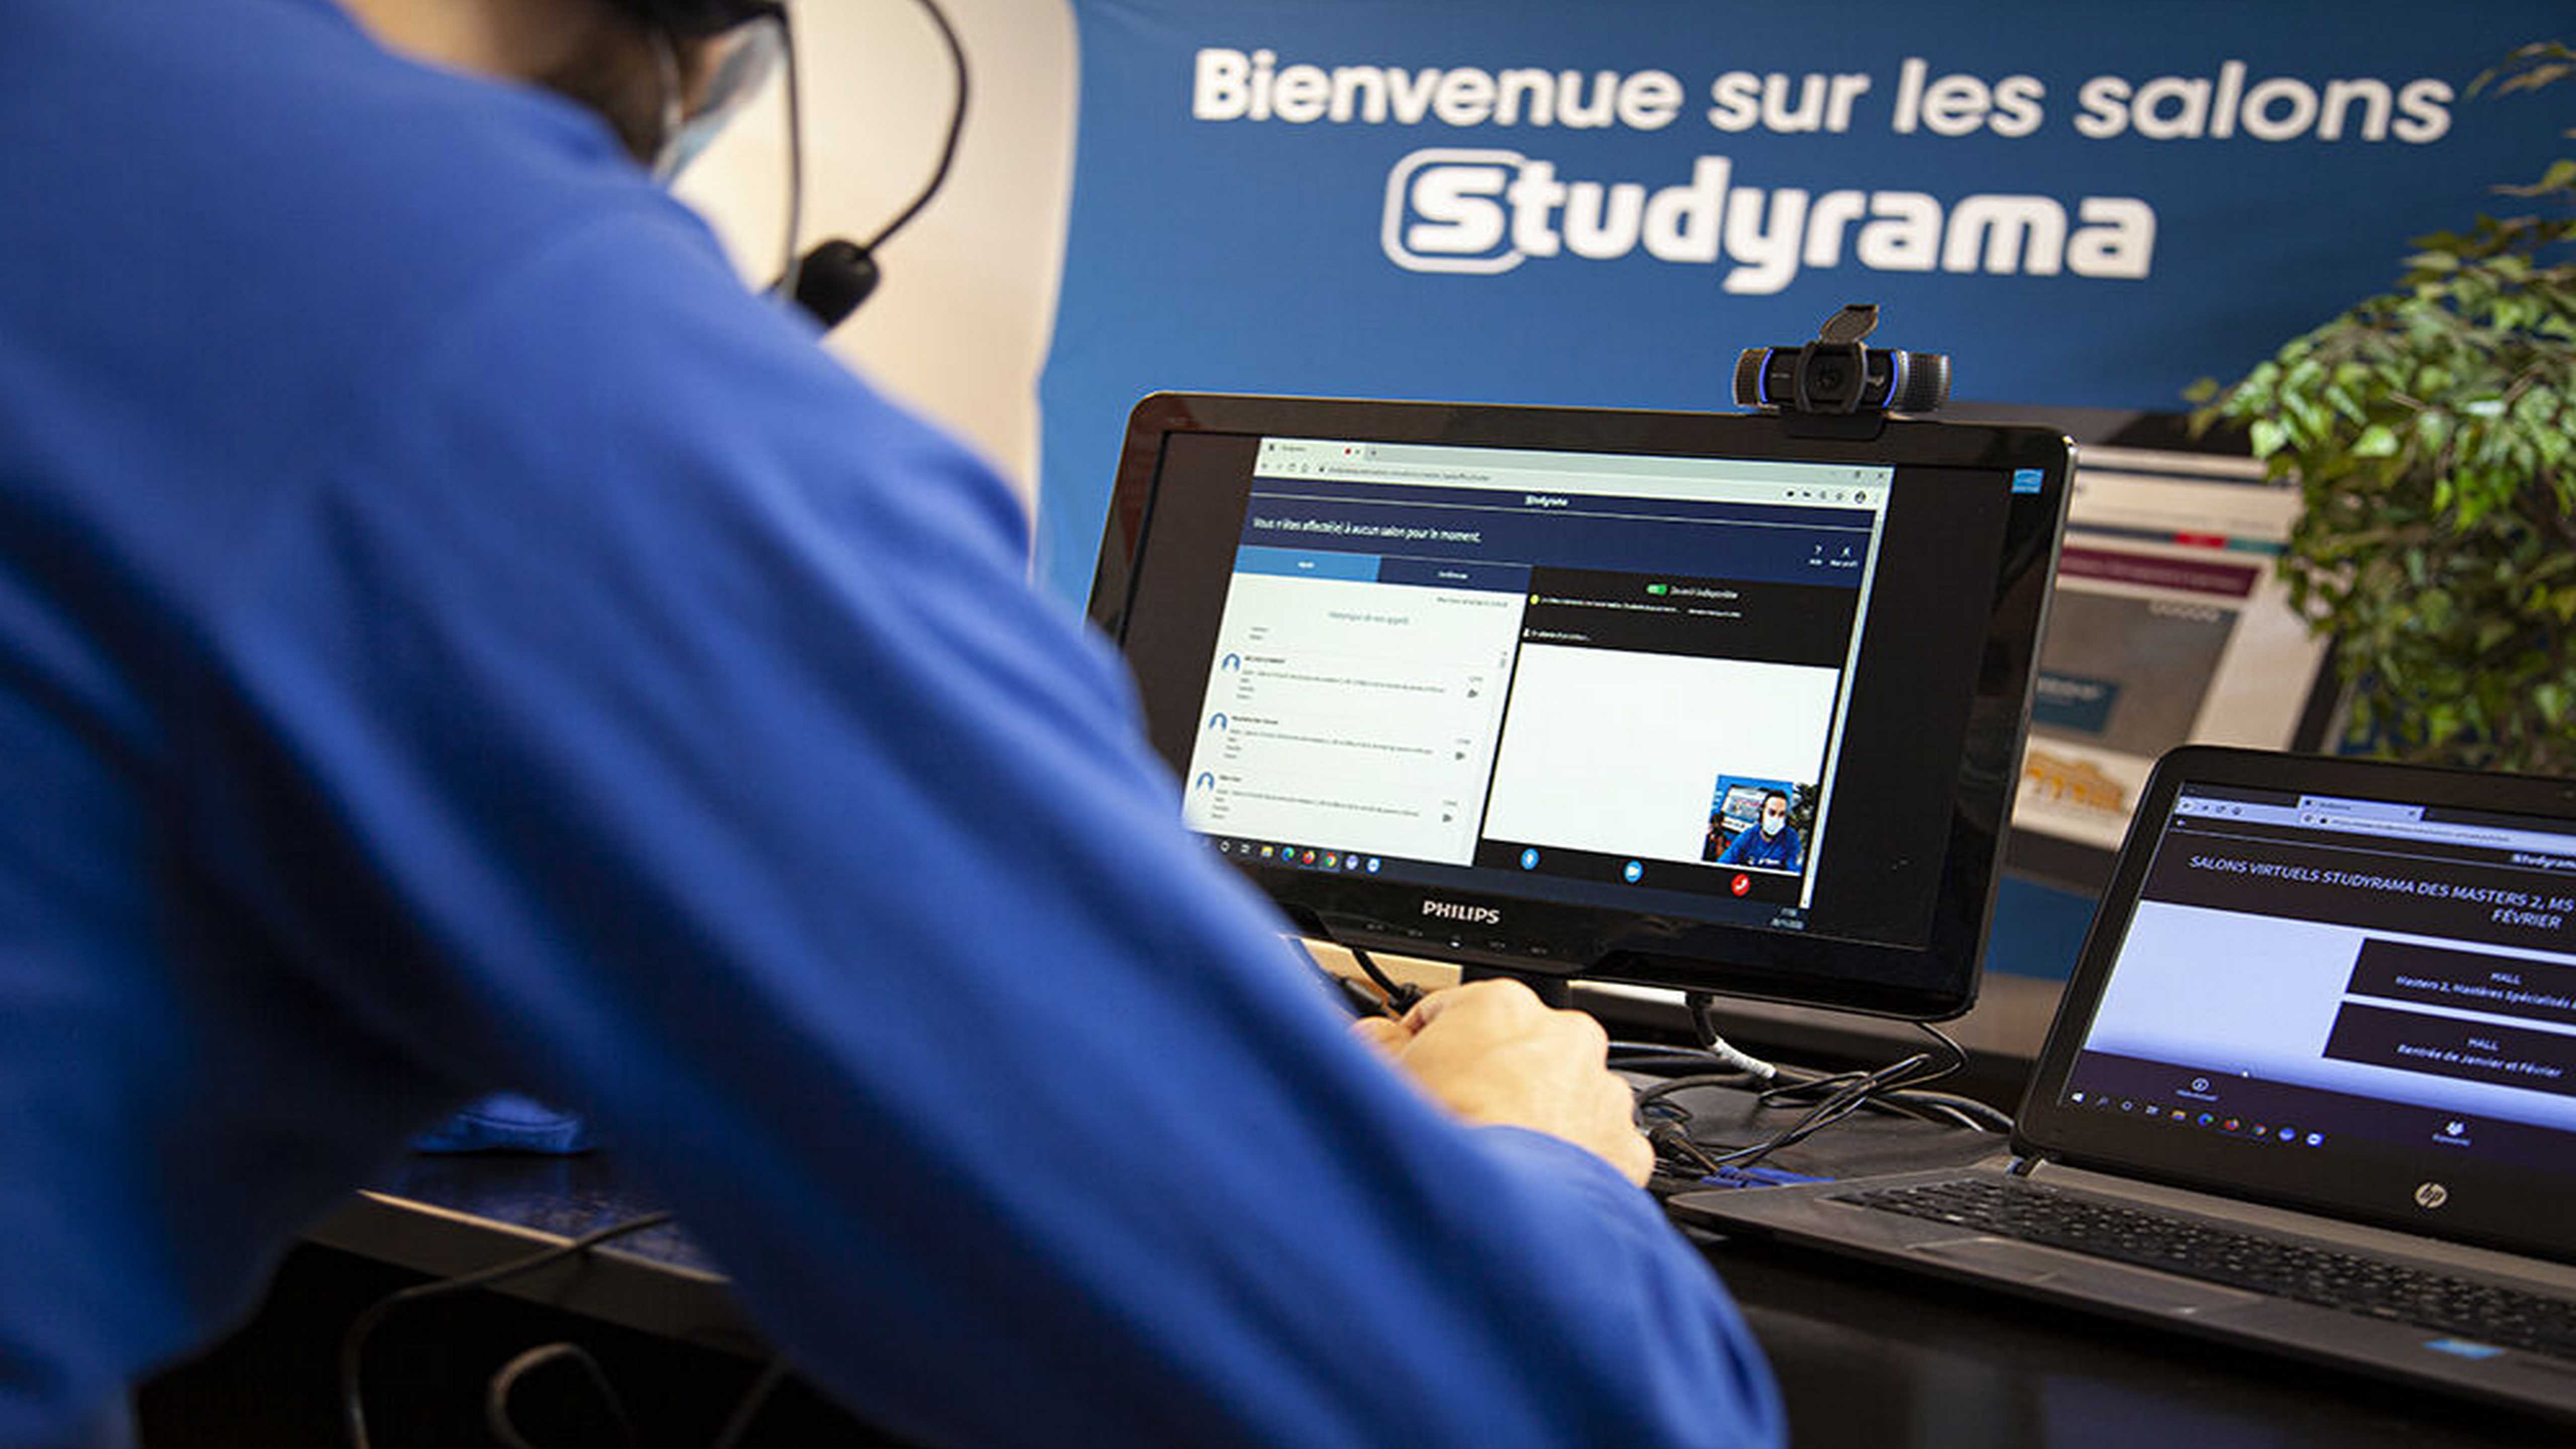 Bordeaux accueille 4 salons d’orientation en version numérique "Studyrama"